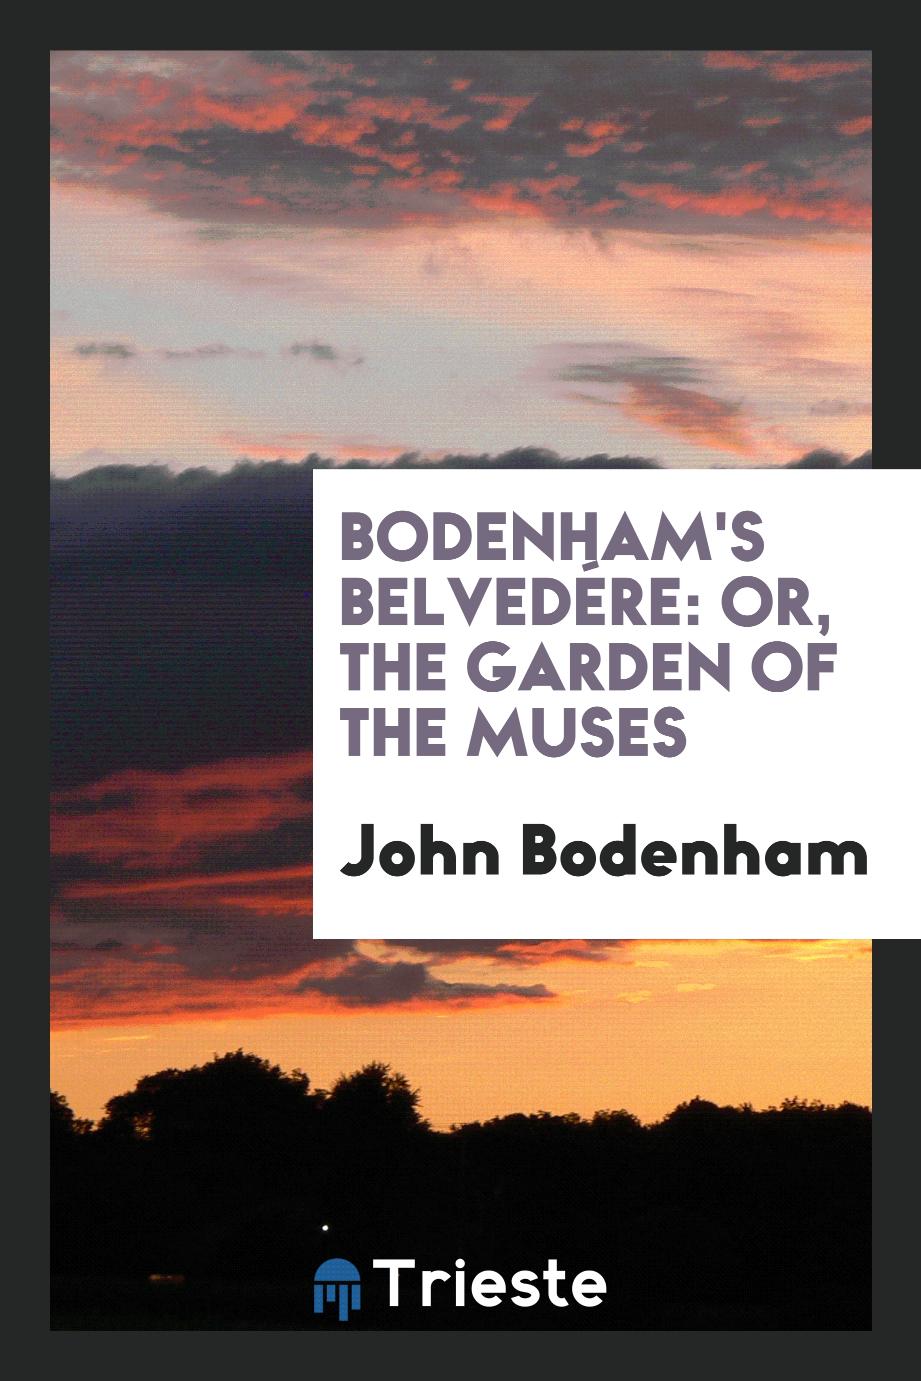 Bodenham's Belvedére: Or, the Garden of the Muses